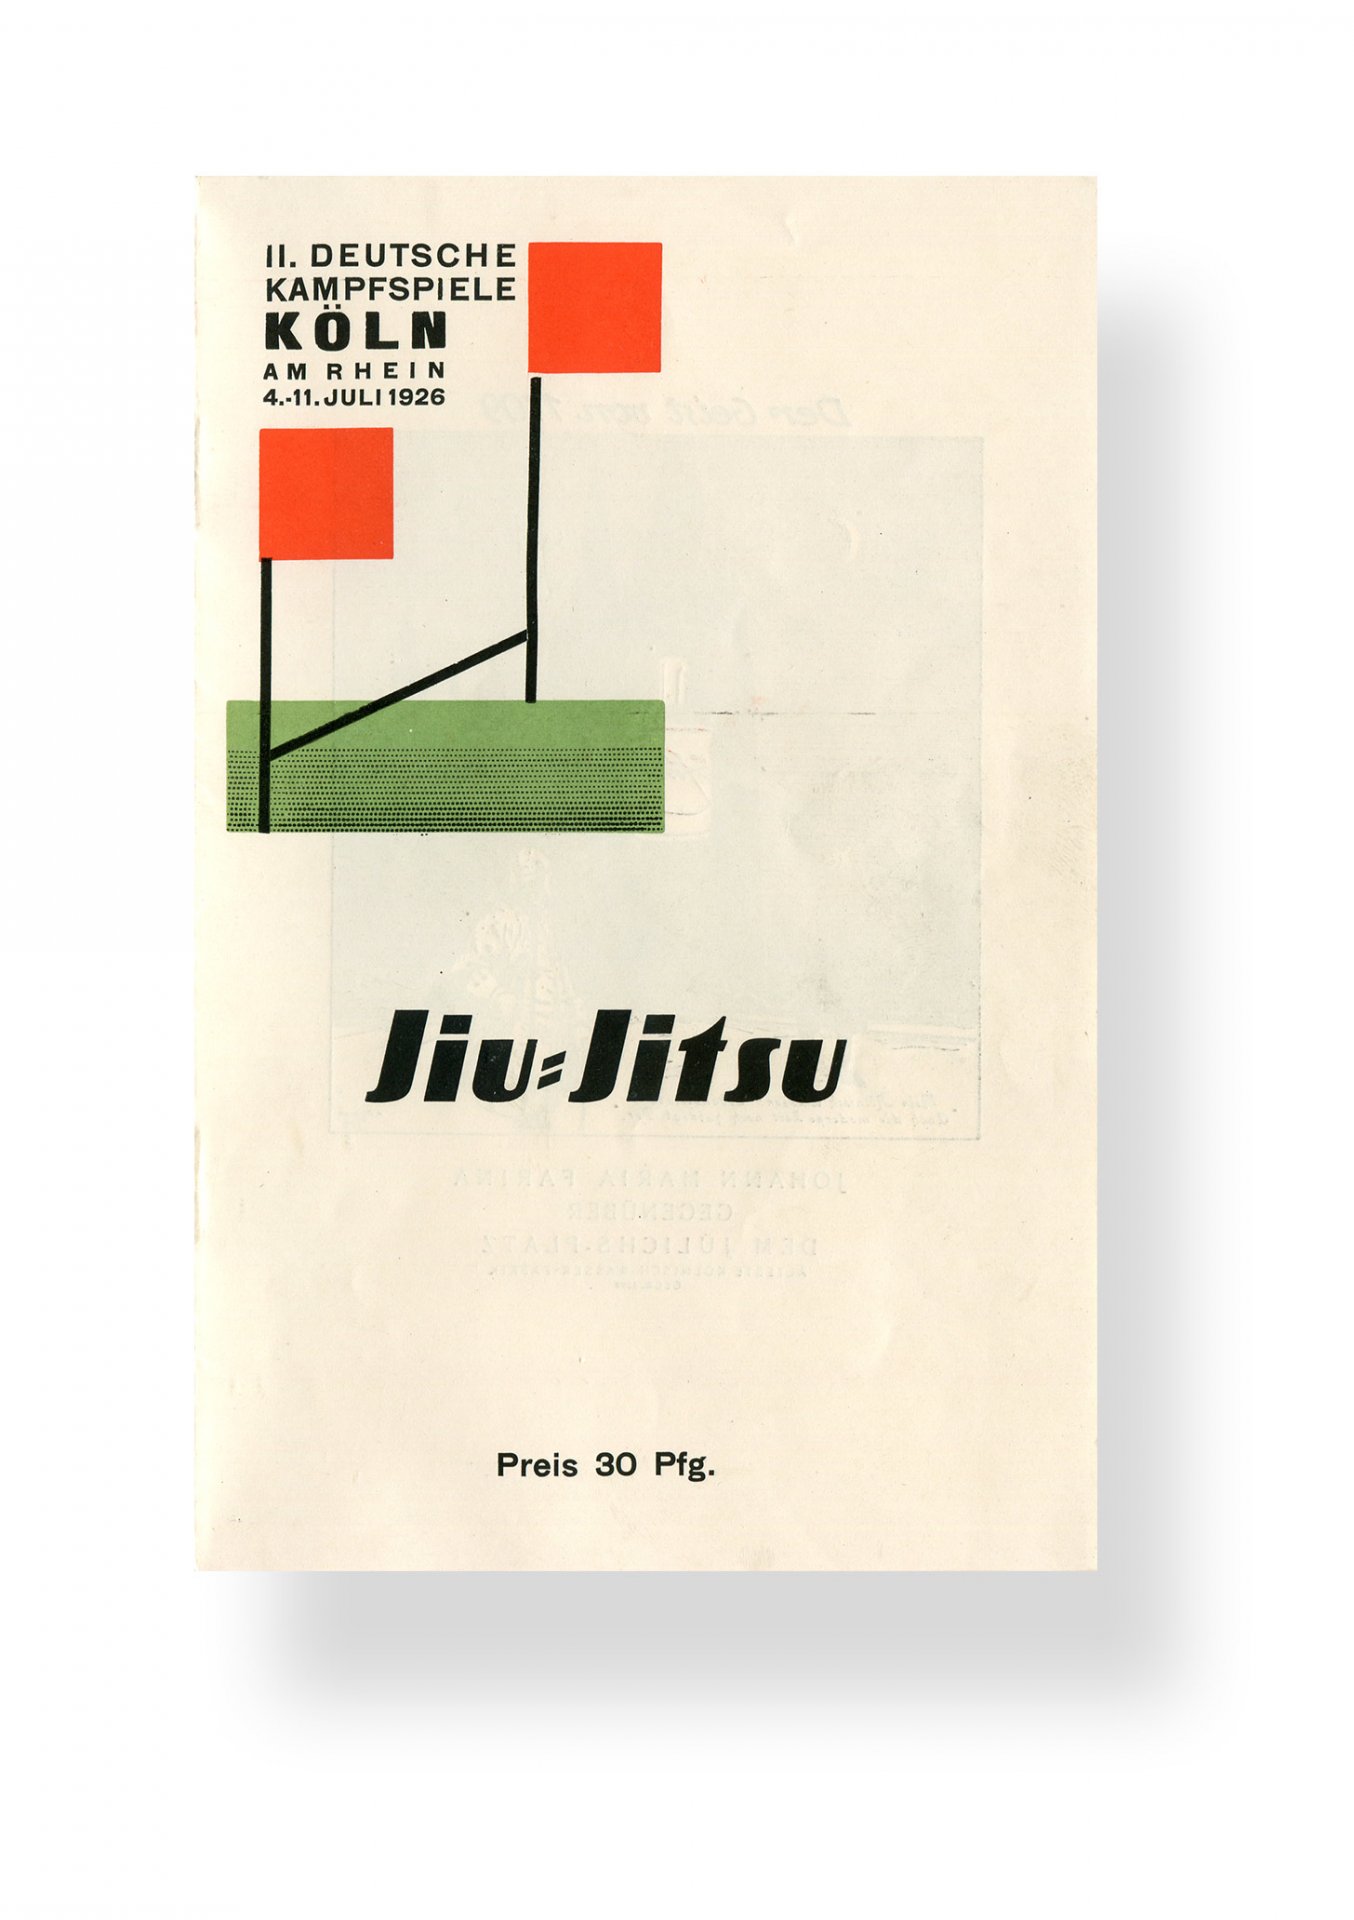 Faltblatt mit dem Logo der 2. Deutschen Kampfspiele